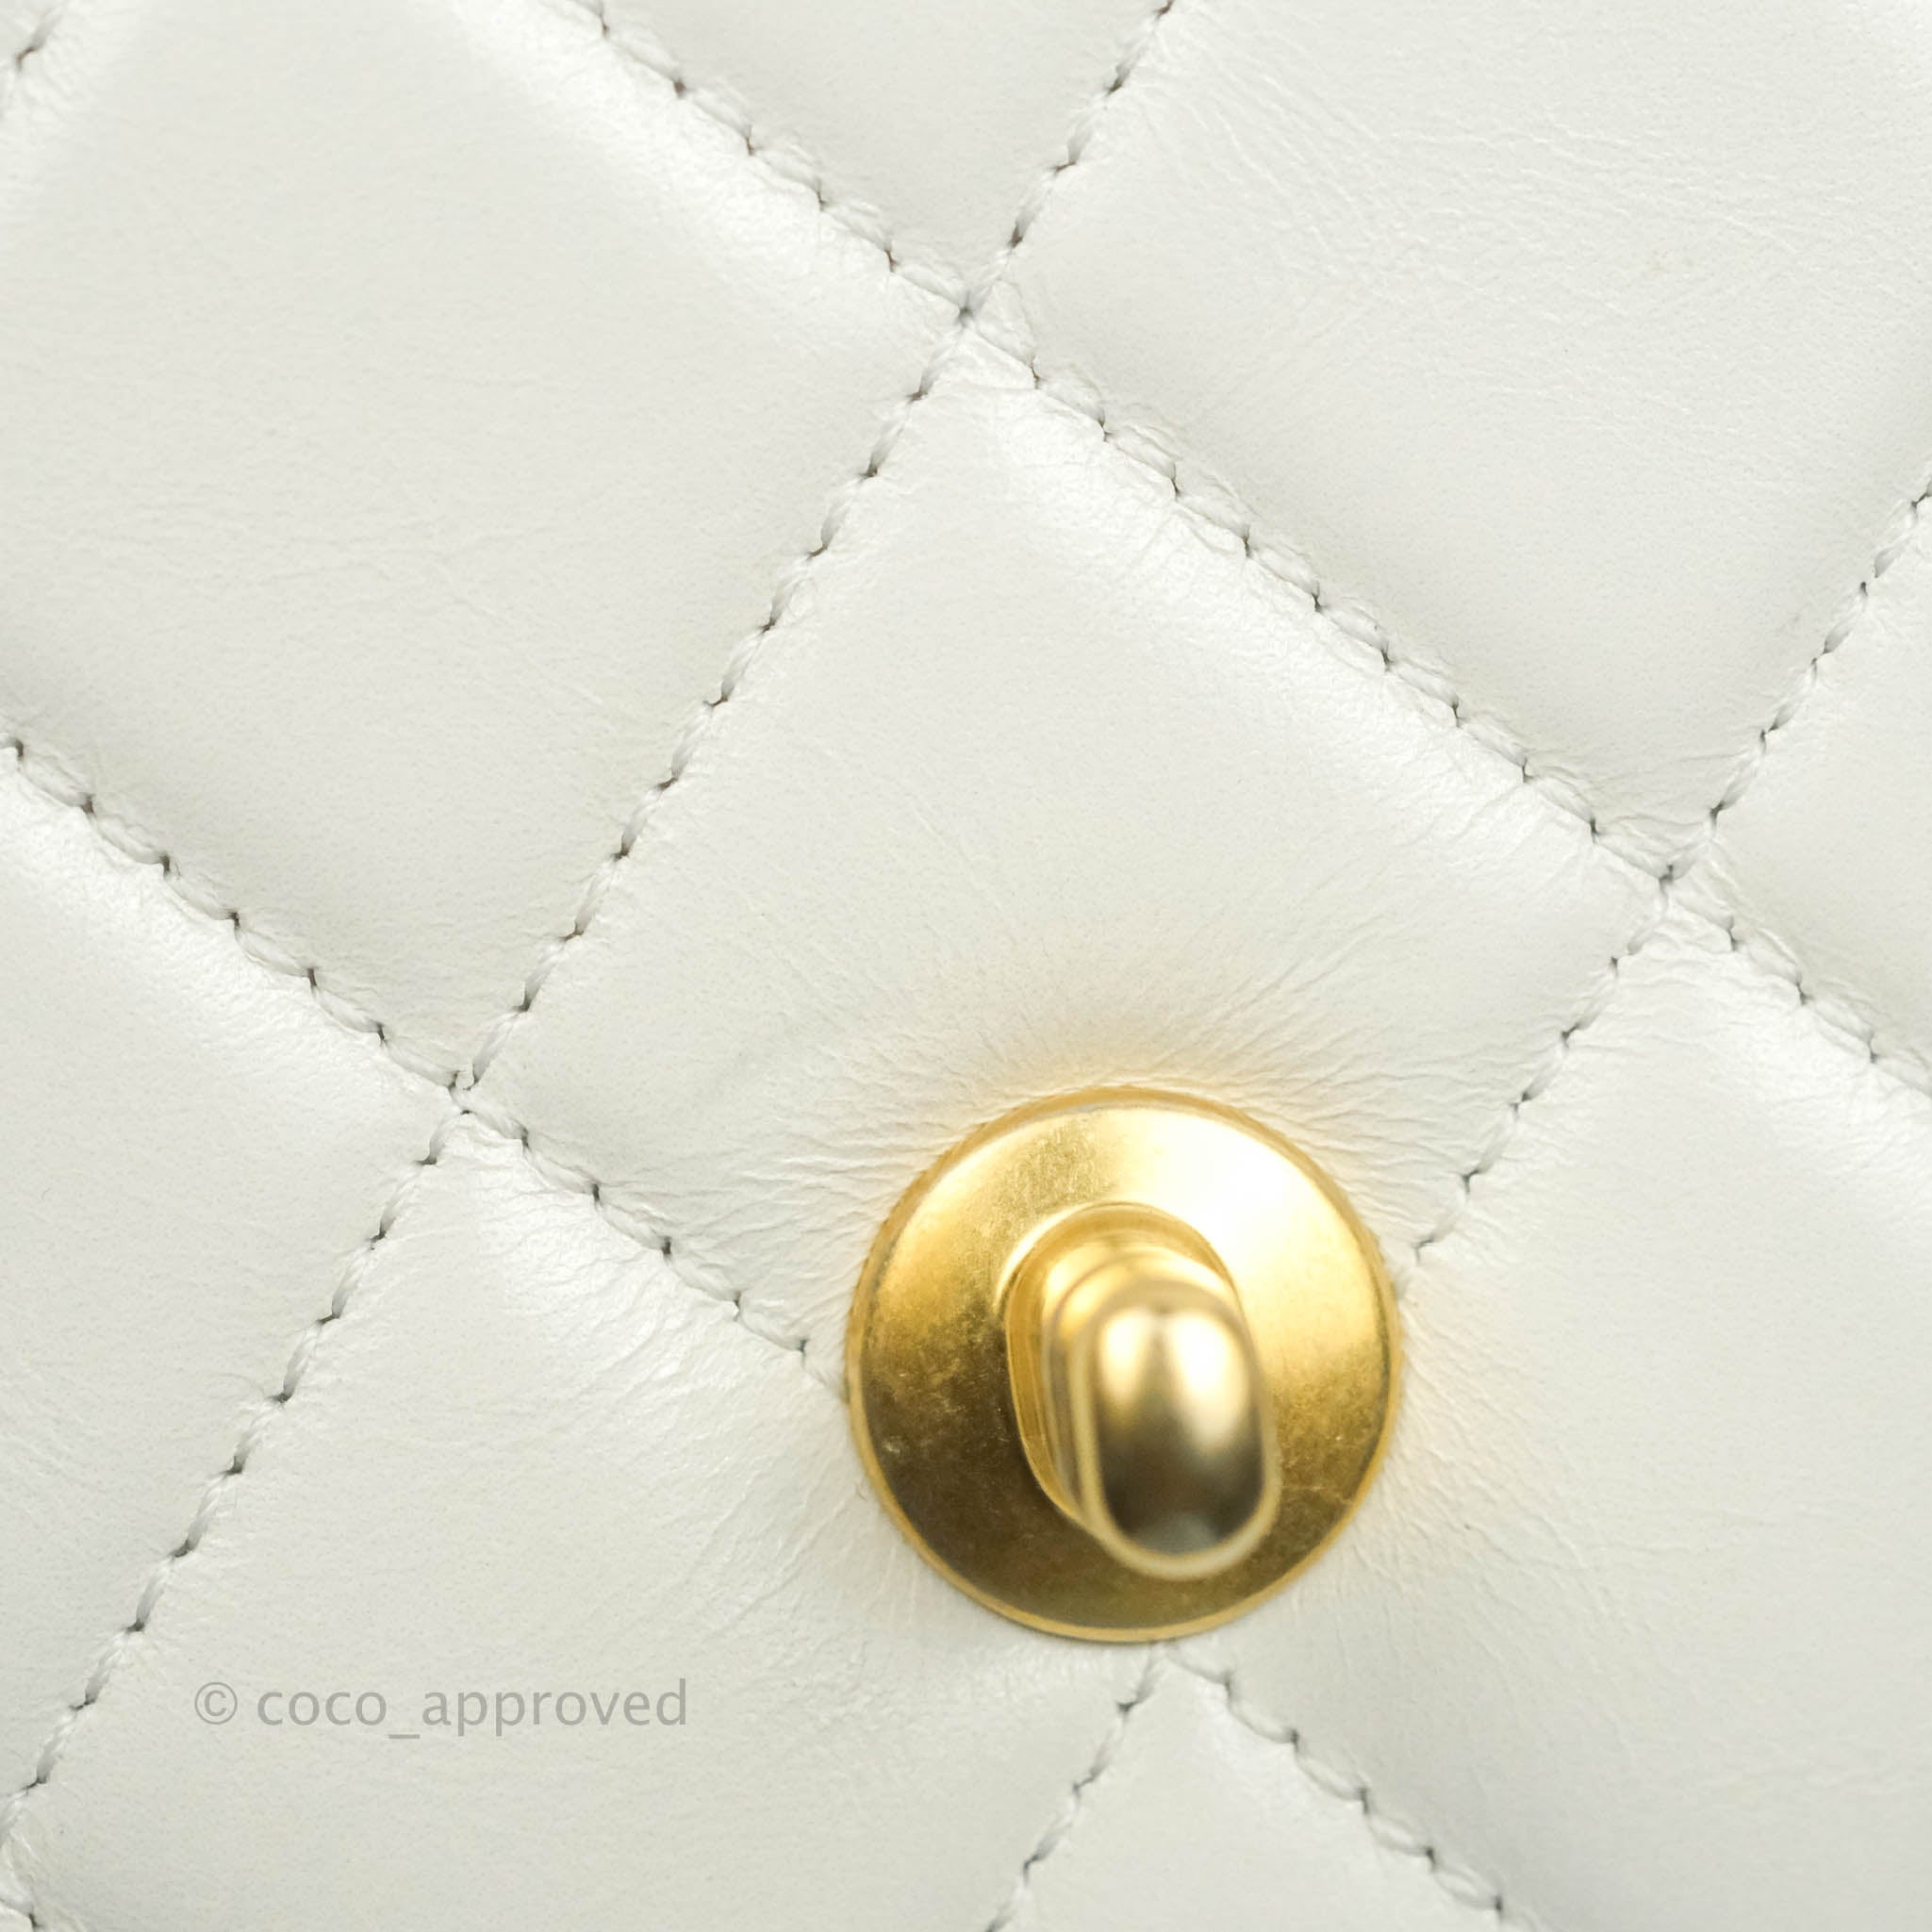 NIB 100%AUTH CHANEL 21A White Perfect Fit Calfskin Mini Flap Bag